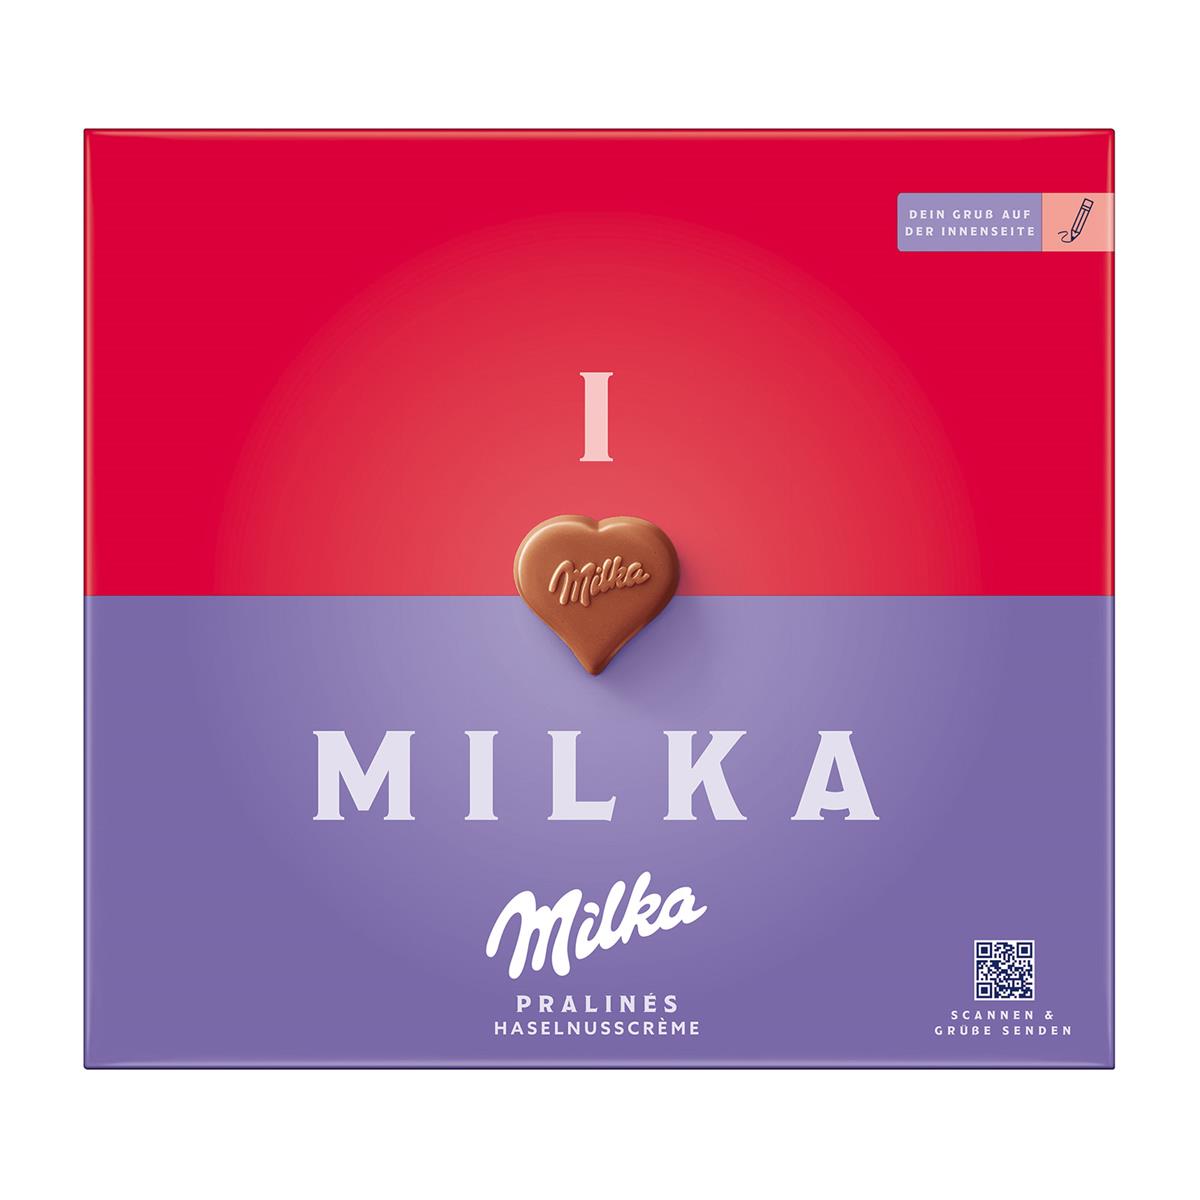 I love Milka